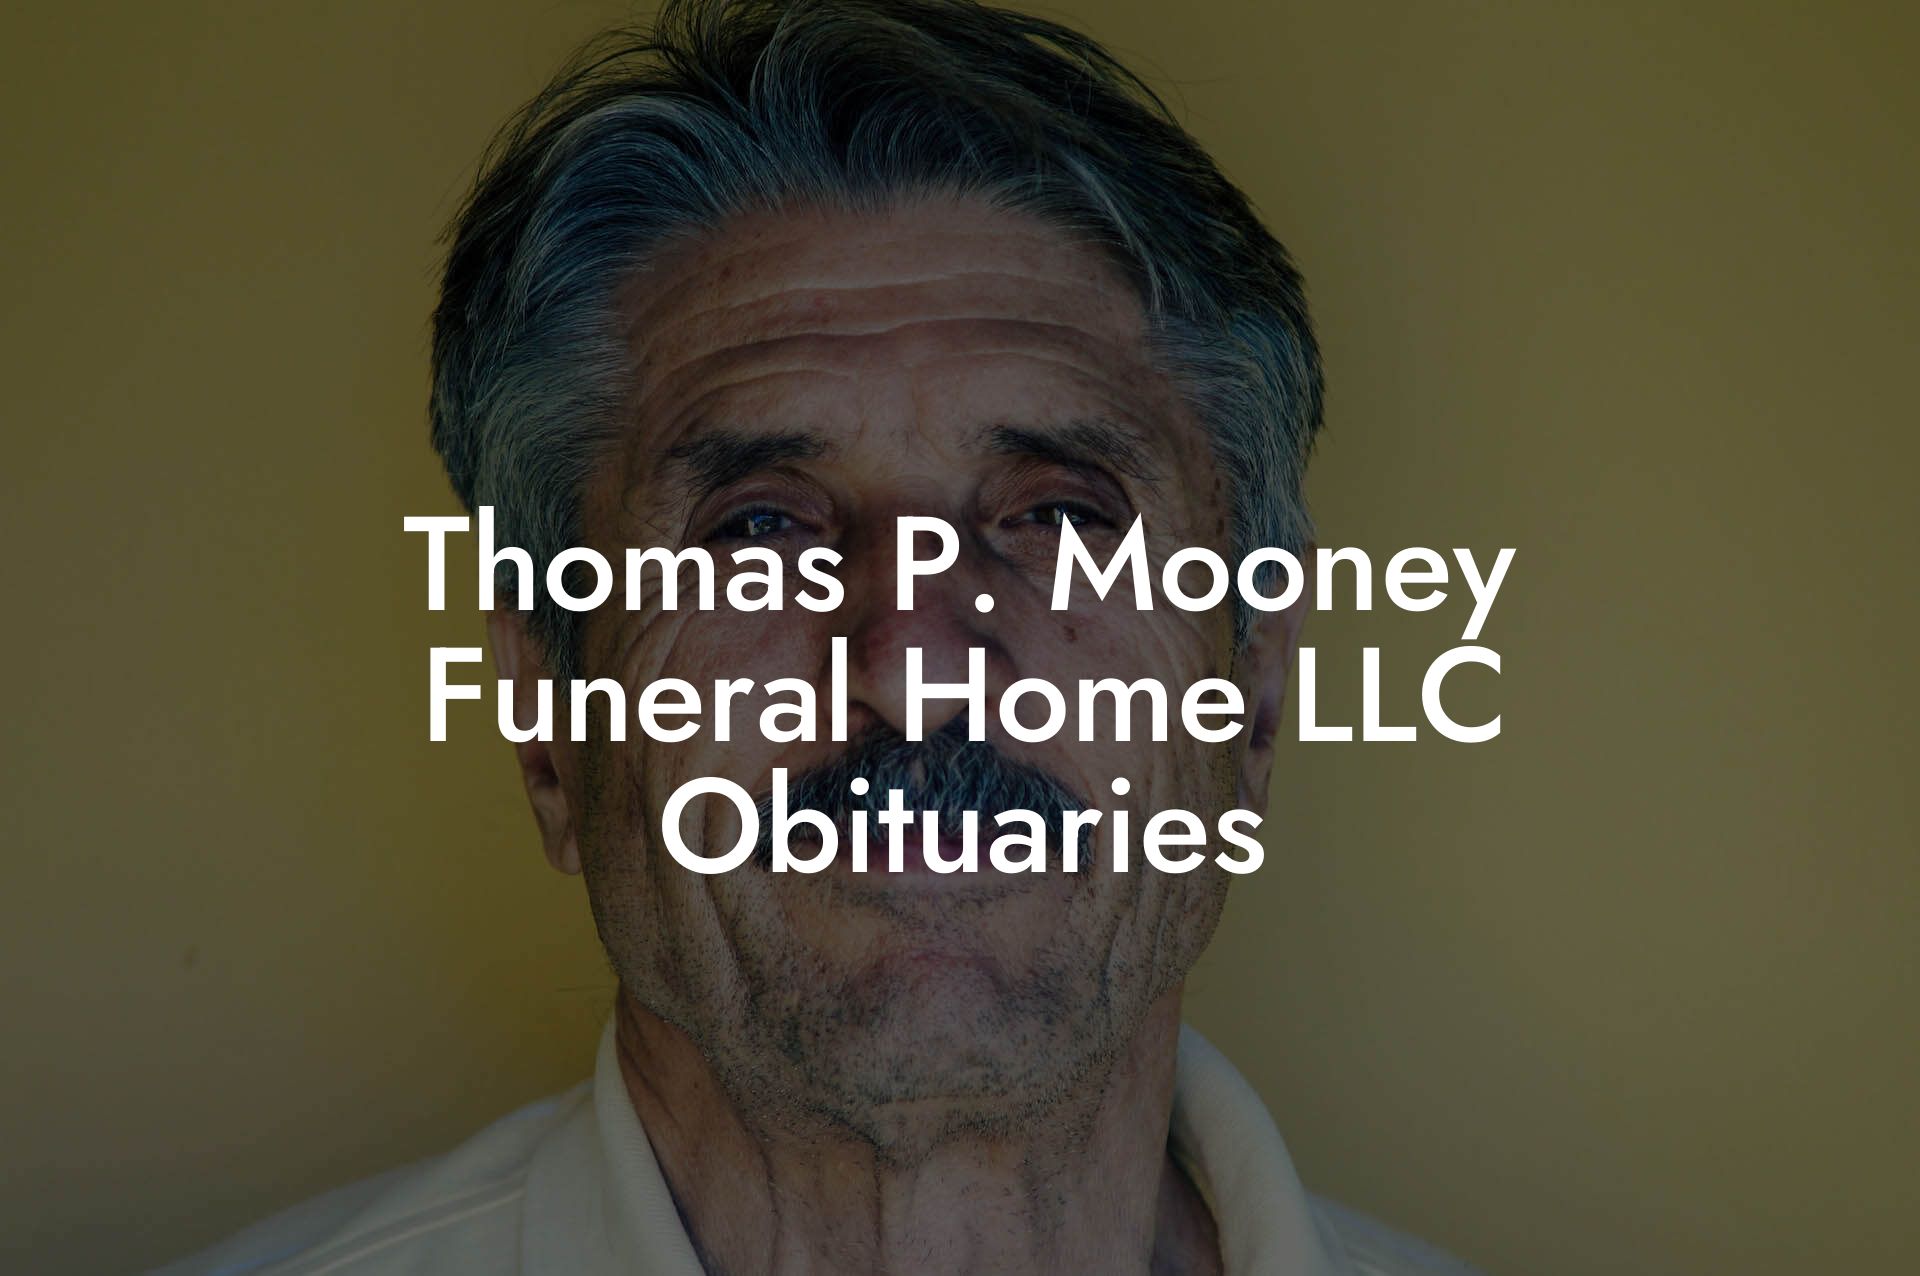 Thomas P. Mooney Funeral Home LLC Obituaries